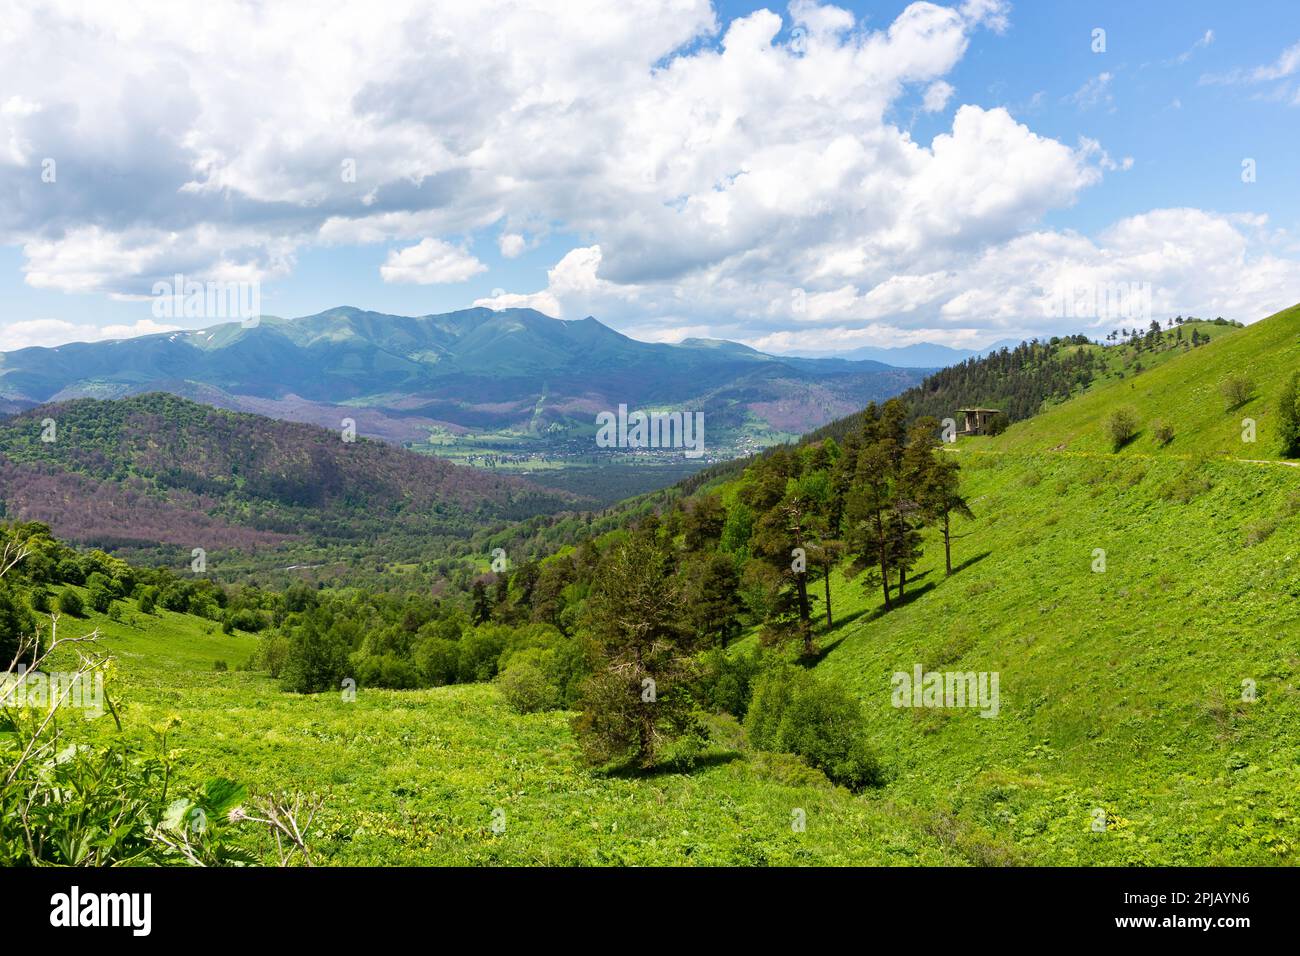 Landschaft der Trialeti (Kaukasus) Berge mit der M-20 Straße zum Tskhratskaro Pass und der alten Bakuriani Skilift, üppig grünen Bergen und Grasland Stockfoto